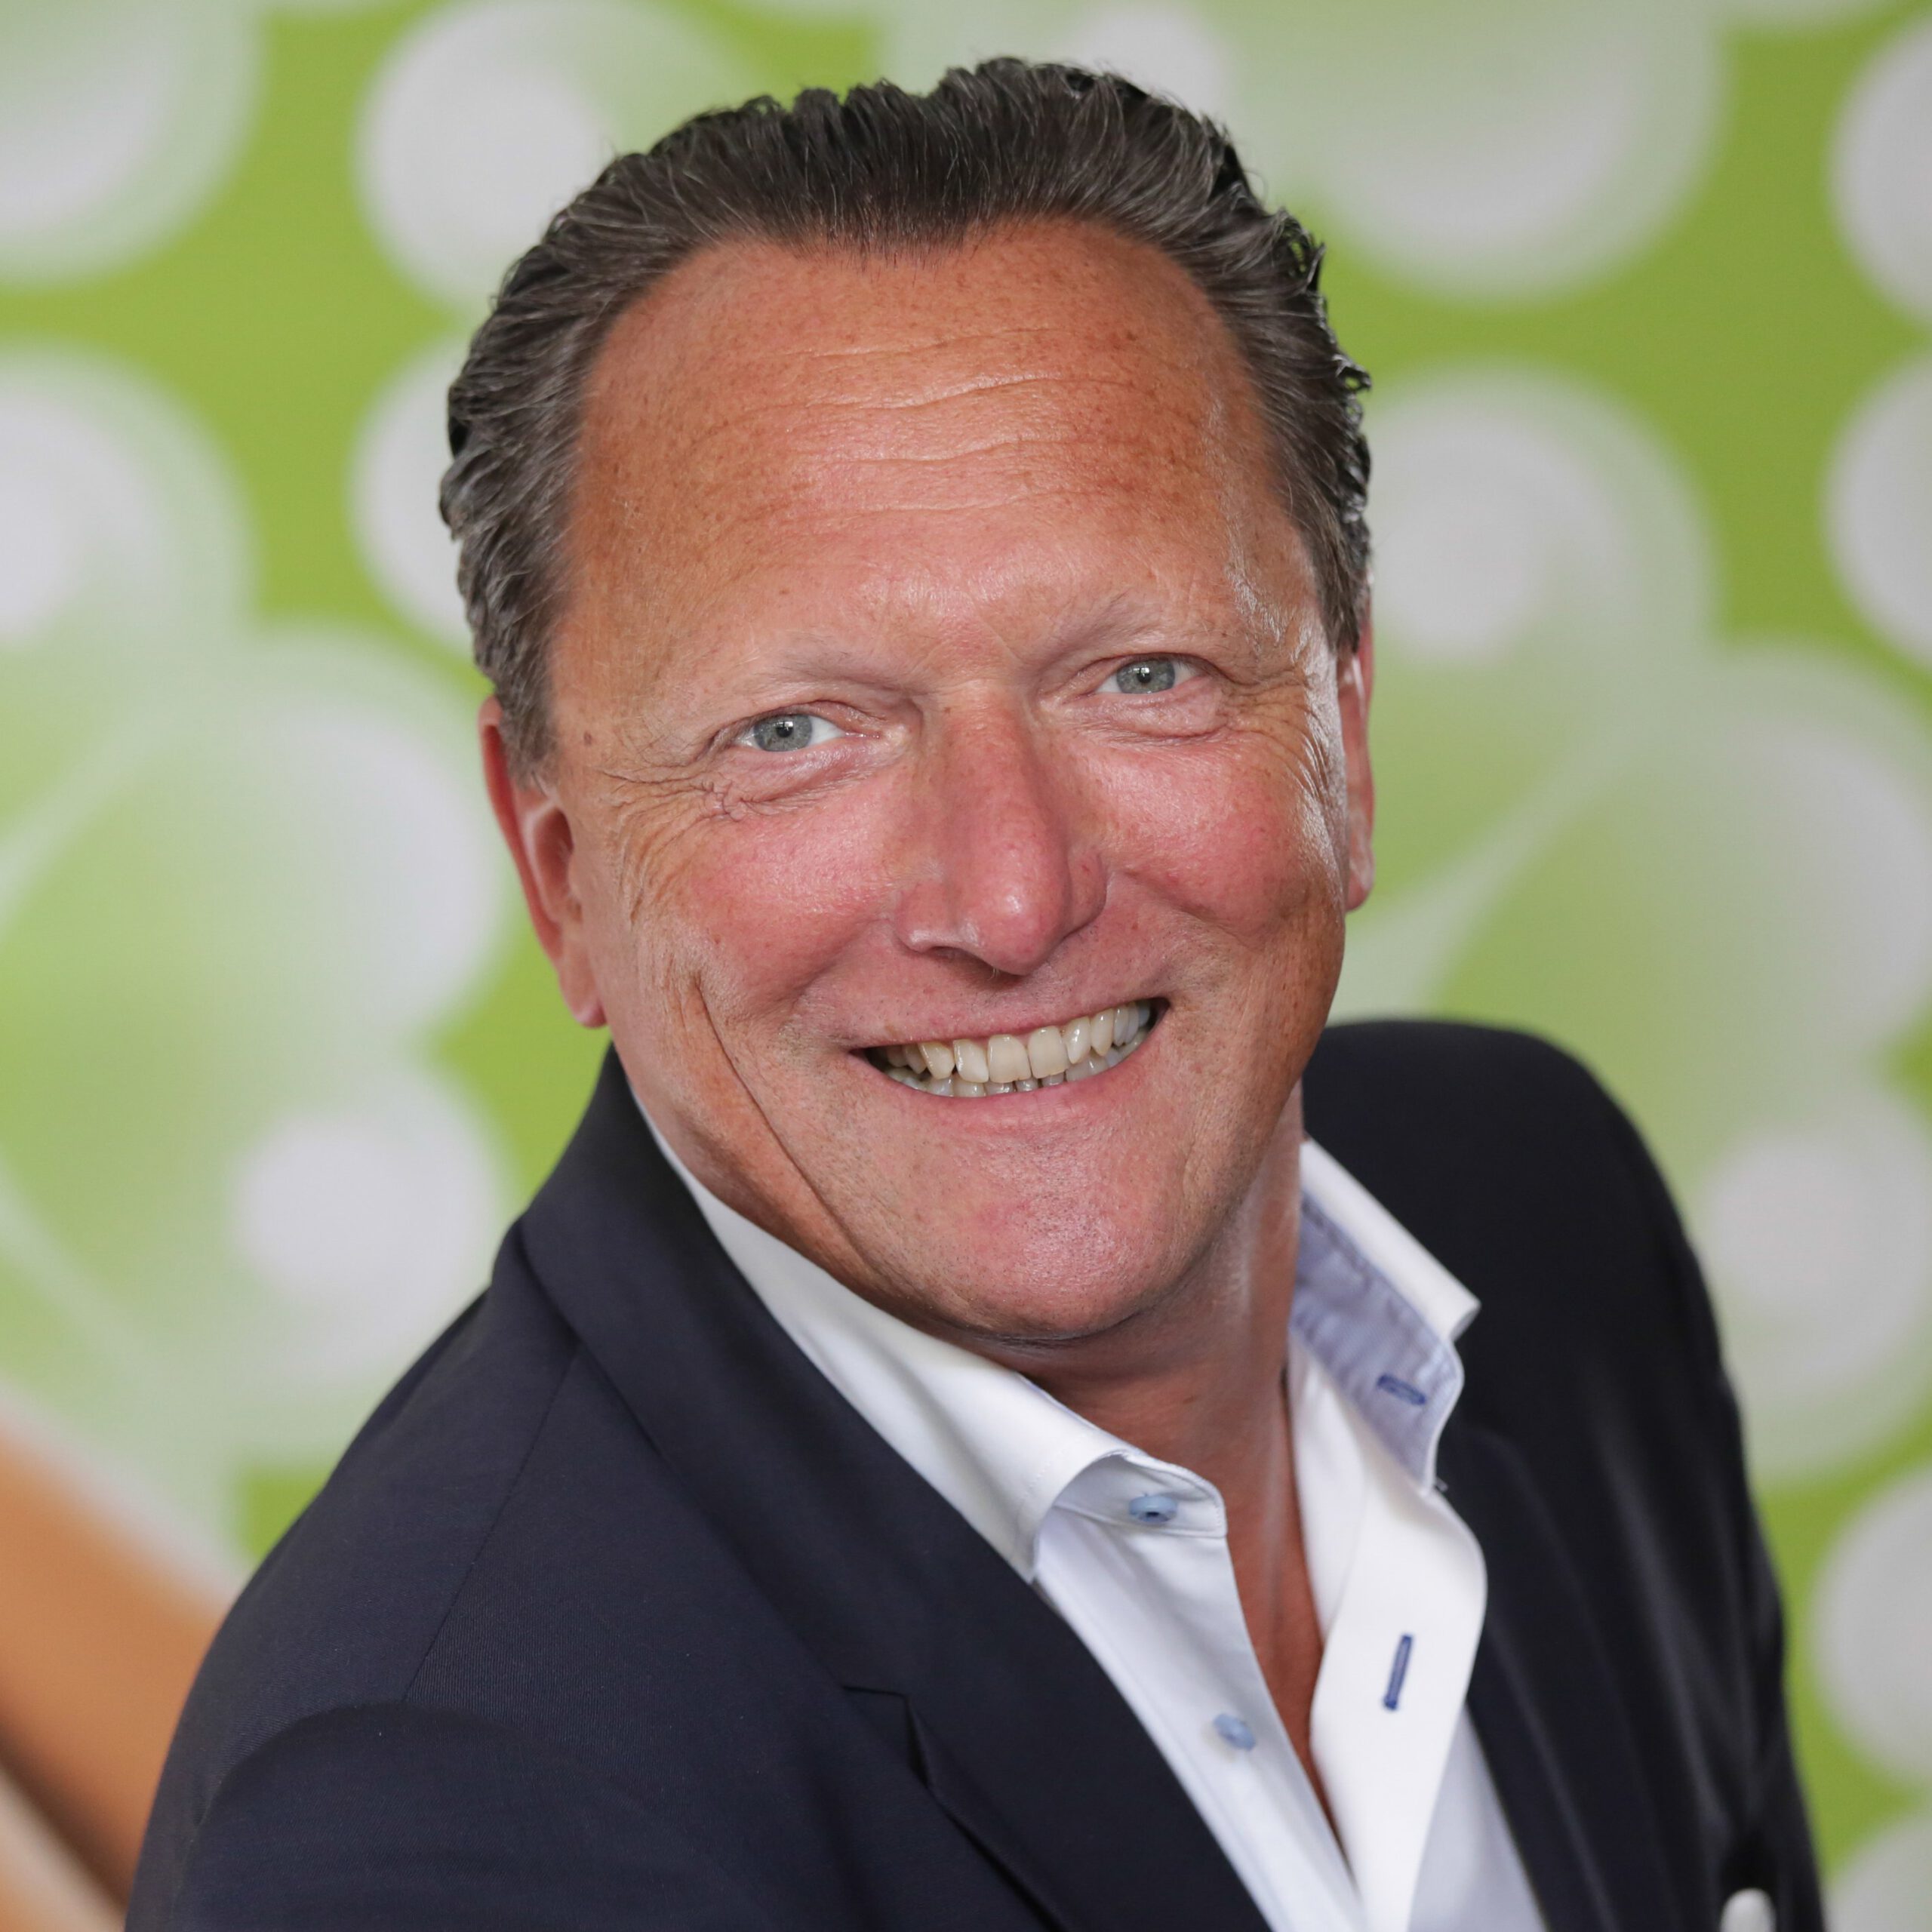 Jörg Beiss, Geschäftsführer von CFP Brands, hat sich entschieden, die Geschäftsführung in neue Hände zu legen